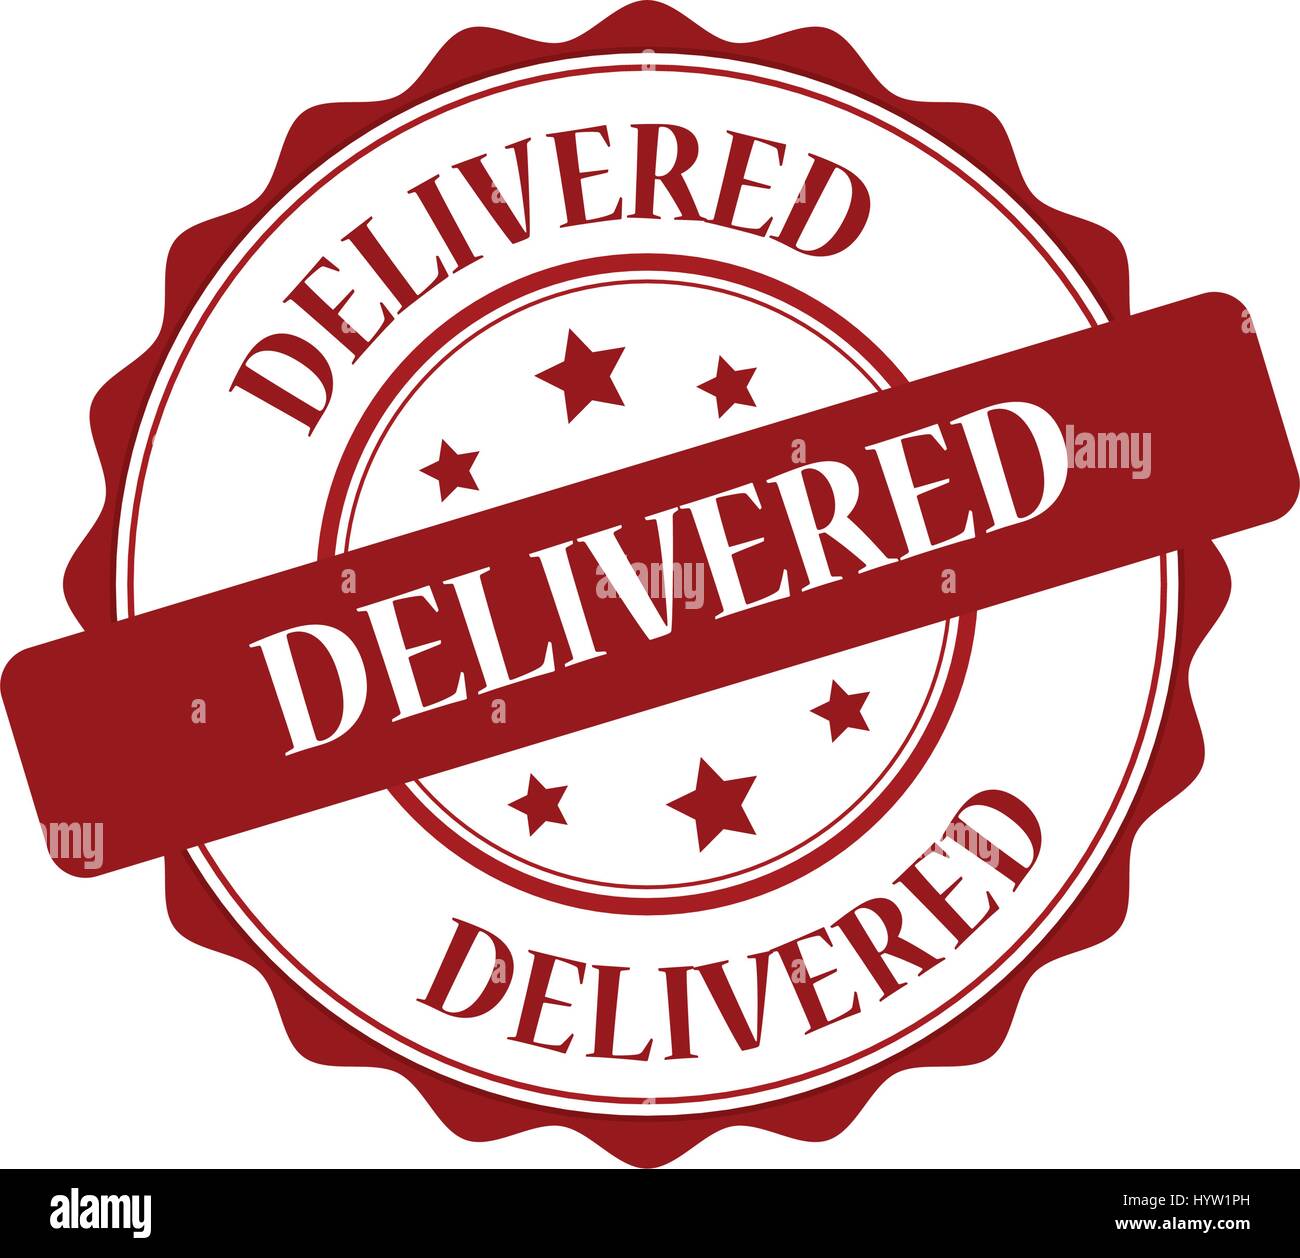 Delivered red stamp illustration Stock Vector Image & Art - Alamy